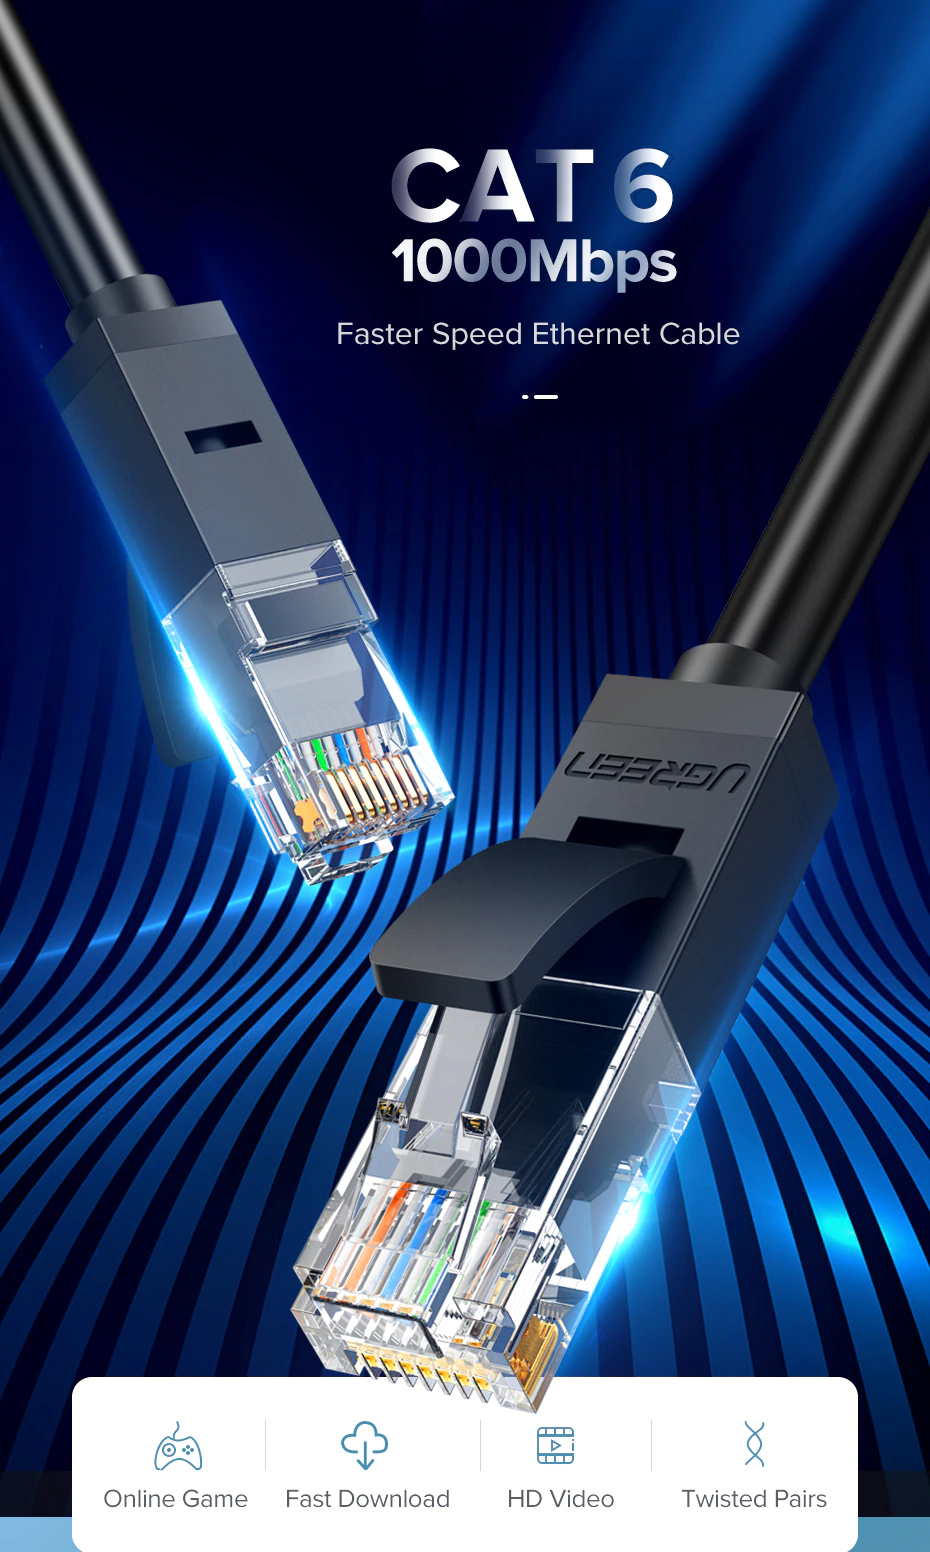 เกี่ยวกับสินค้า UGREEN รุ่น NW102 สายแลน Cat6 LAN Ethernet Cable Gigabit RJ45 รองรับ 1000Mbps ความยาว 50CM-10M มี 2 สี ดำ/น้ำเงิน